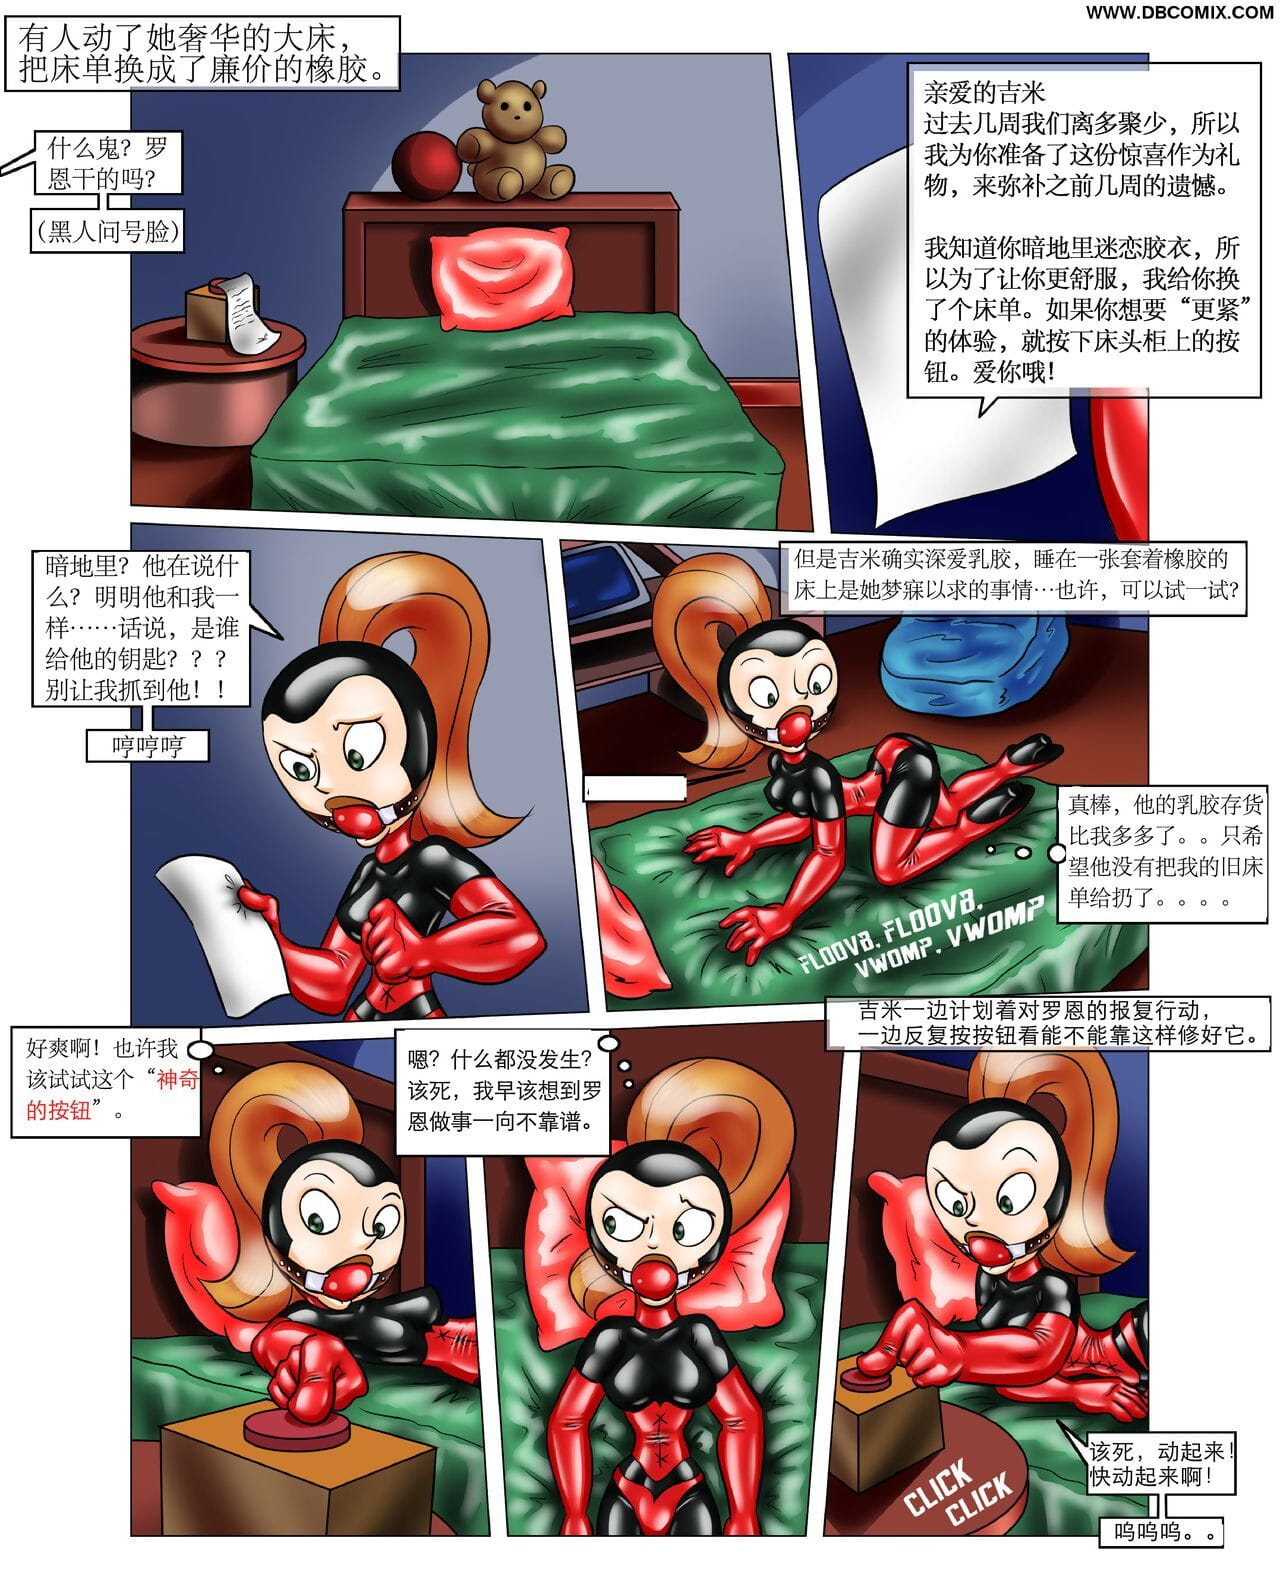 imposible obsceno ron regalo 【大头翻译】 page 1